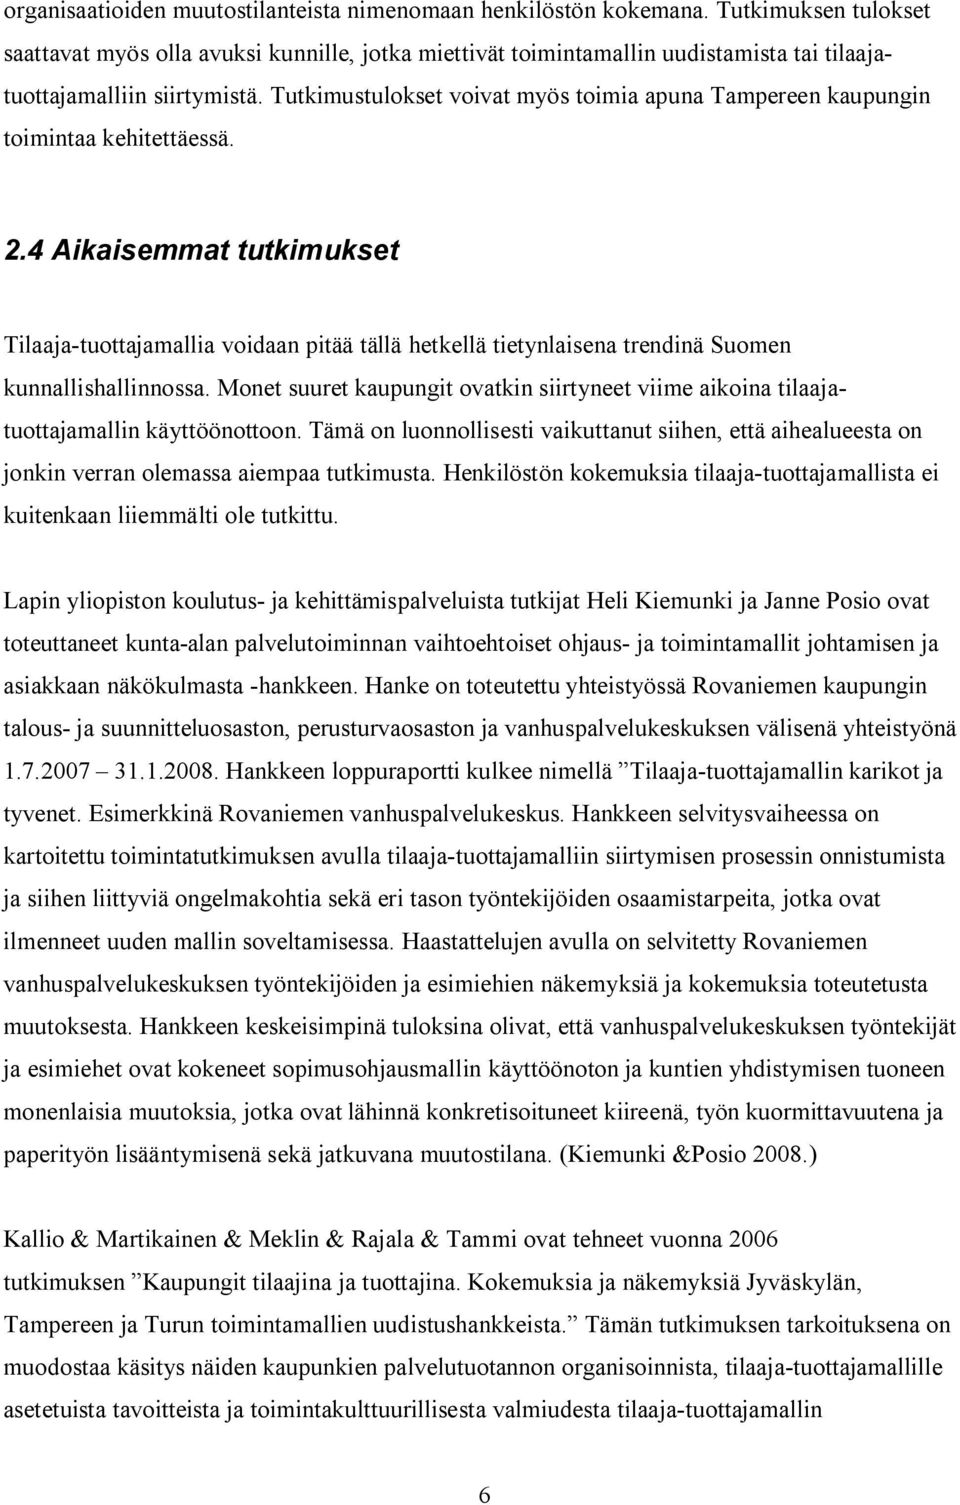 Tutkimustulokset voivat myös toimia apuna Tampereen kaupungin toimintaa kehitettäessä. 2.